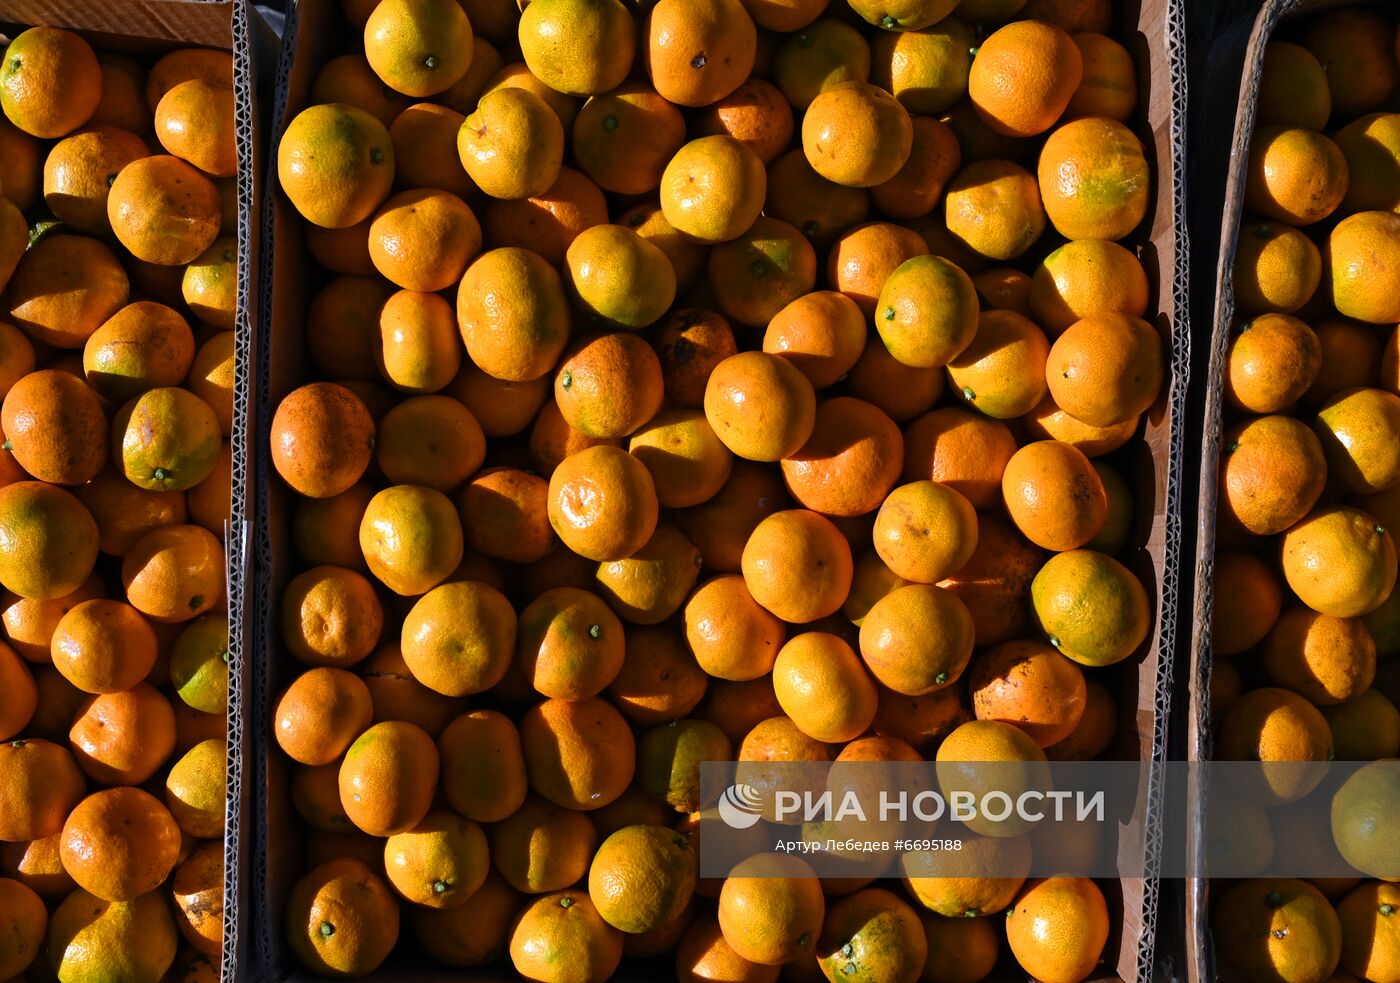 Сбор мандаринов в Сочи